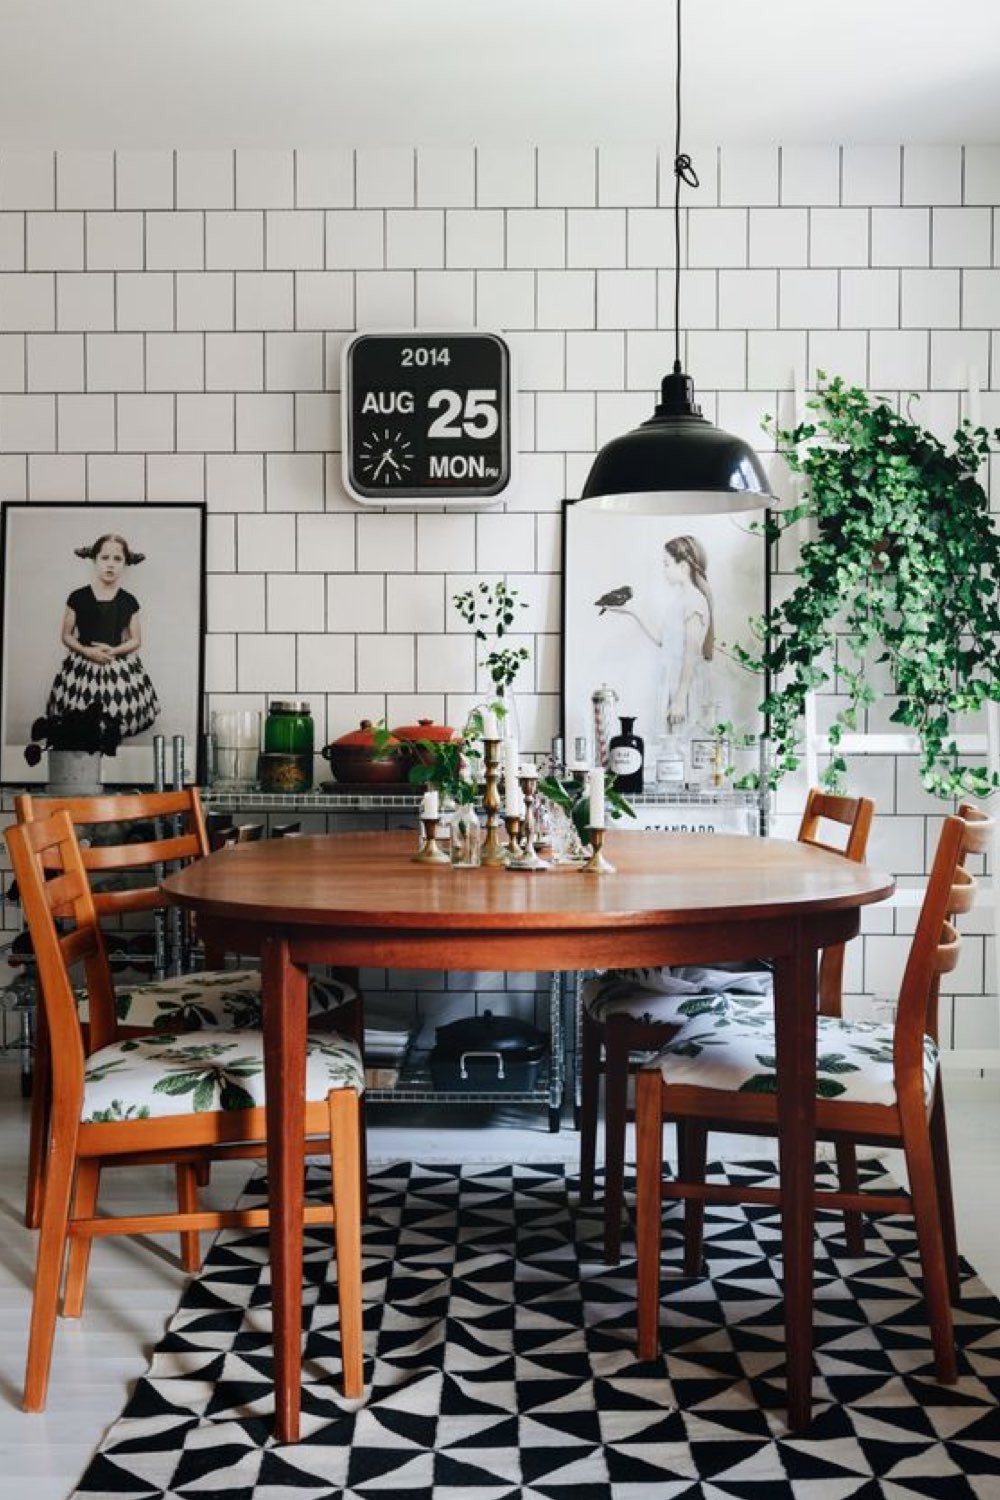 exemple decor salle a manger reussi ambiance vintage table en bois ronde tapis noir et blanc revêtement mural carrelage blanc objet déco rétro petite plante verte suspension noir